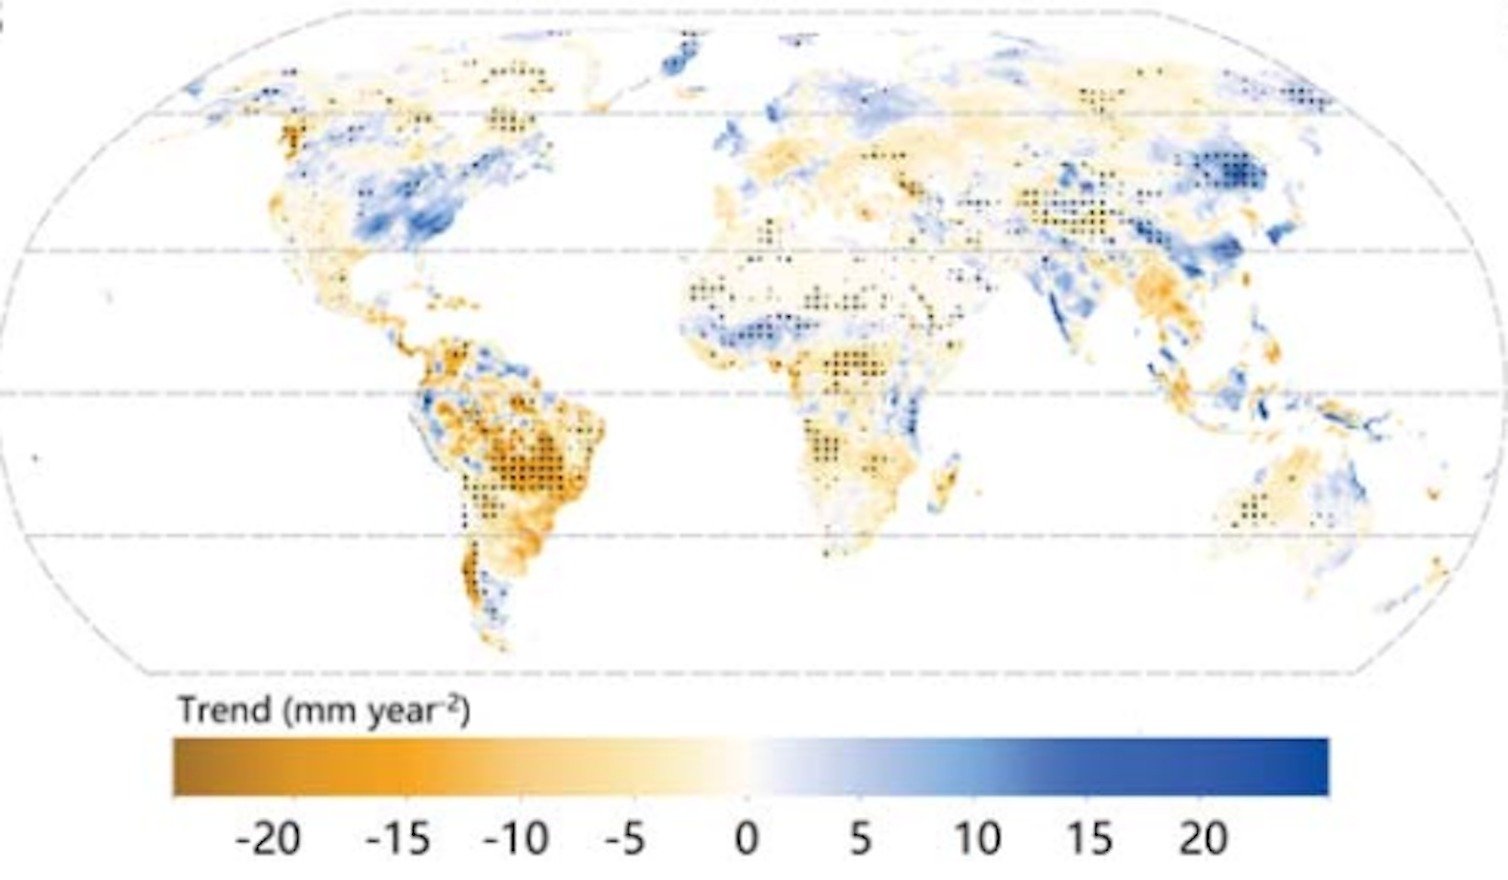 Tendências na disponibilidade de água 2001-2020. O Hemisfério Sul tem mais laranja do que azul.